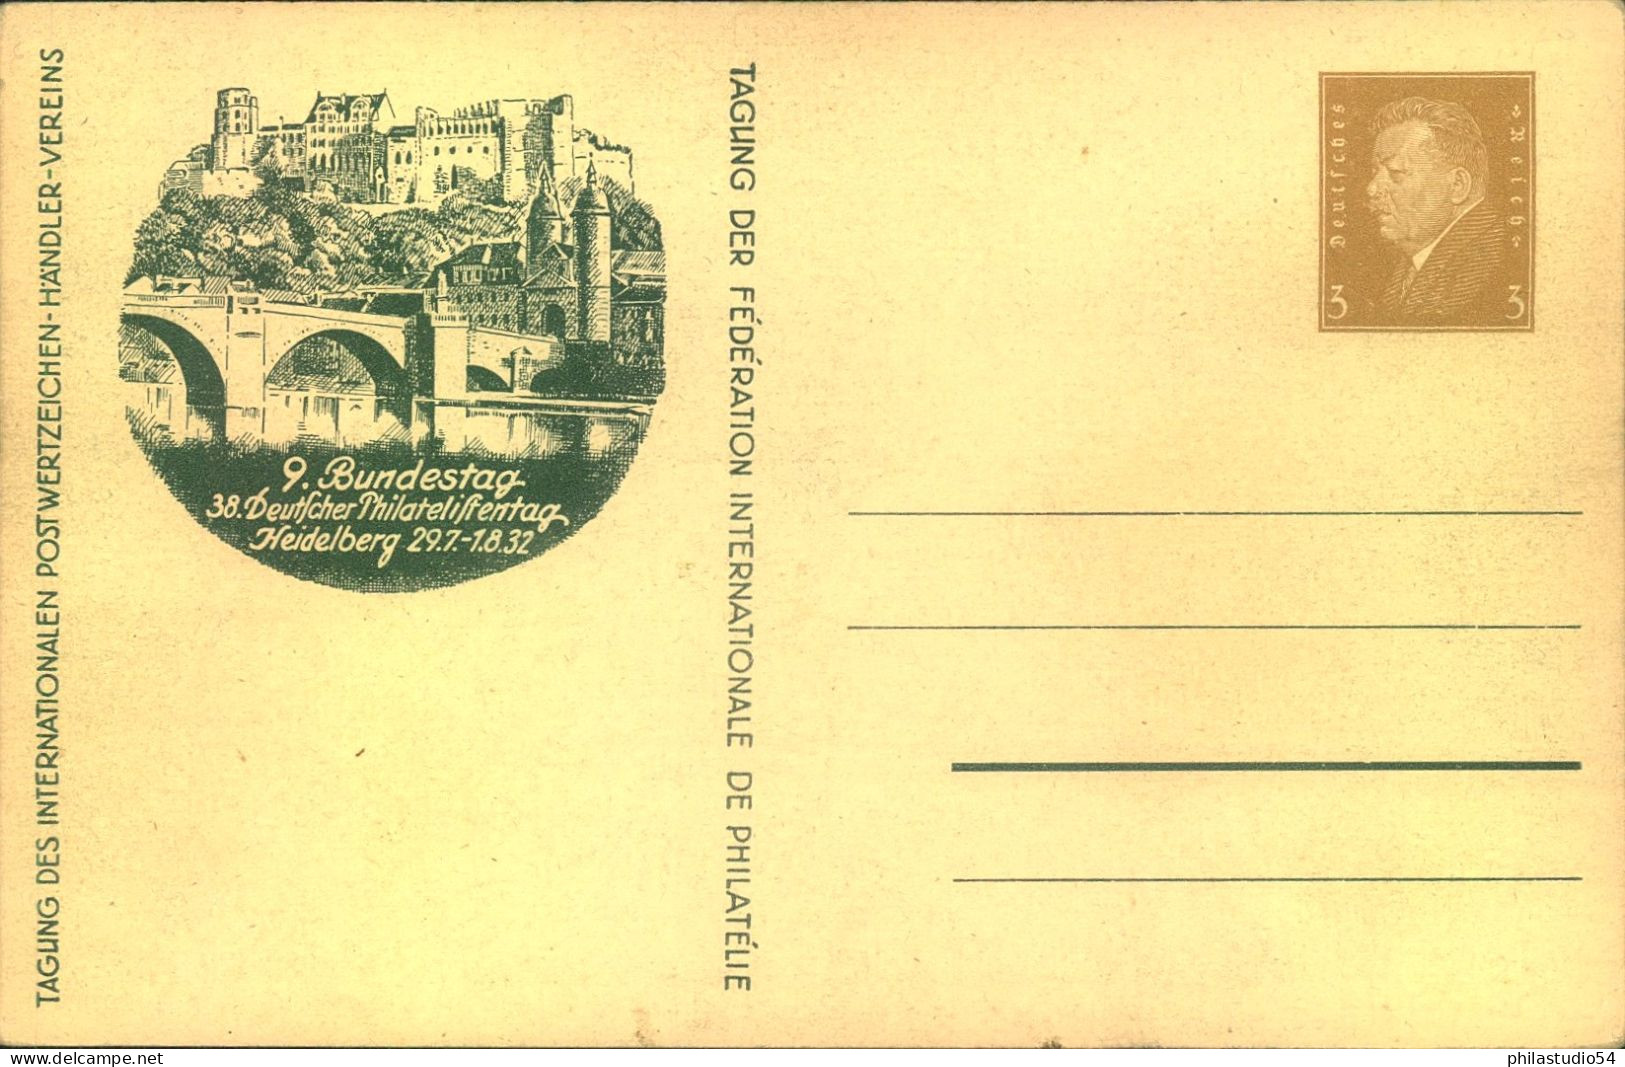 1940, "TAG DER BRIEFMARKE", Drei Verschiedene Sonderkarten, Je Mit SSt Leipzig - Covers & Documents